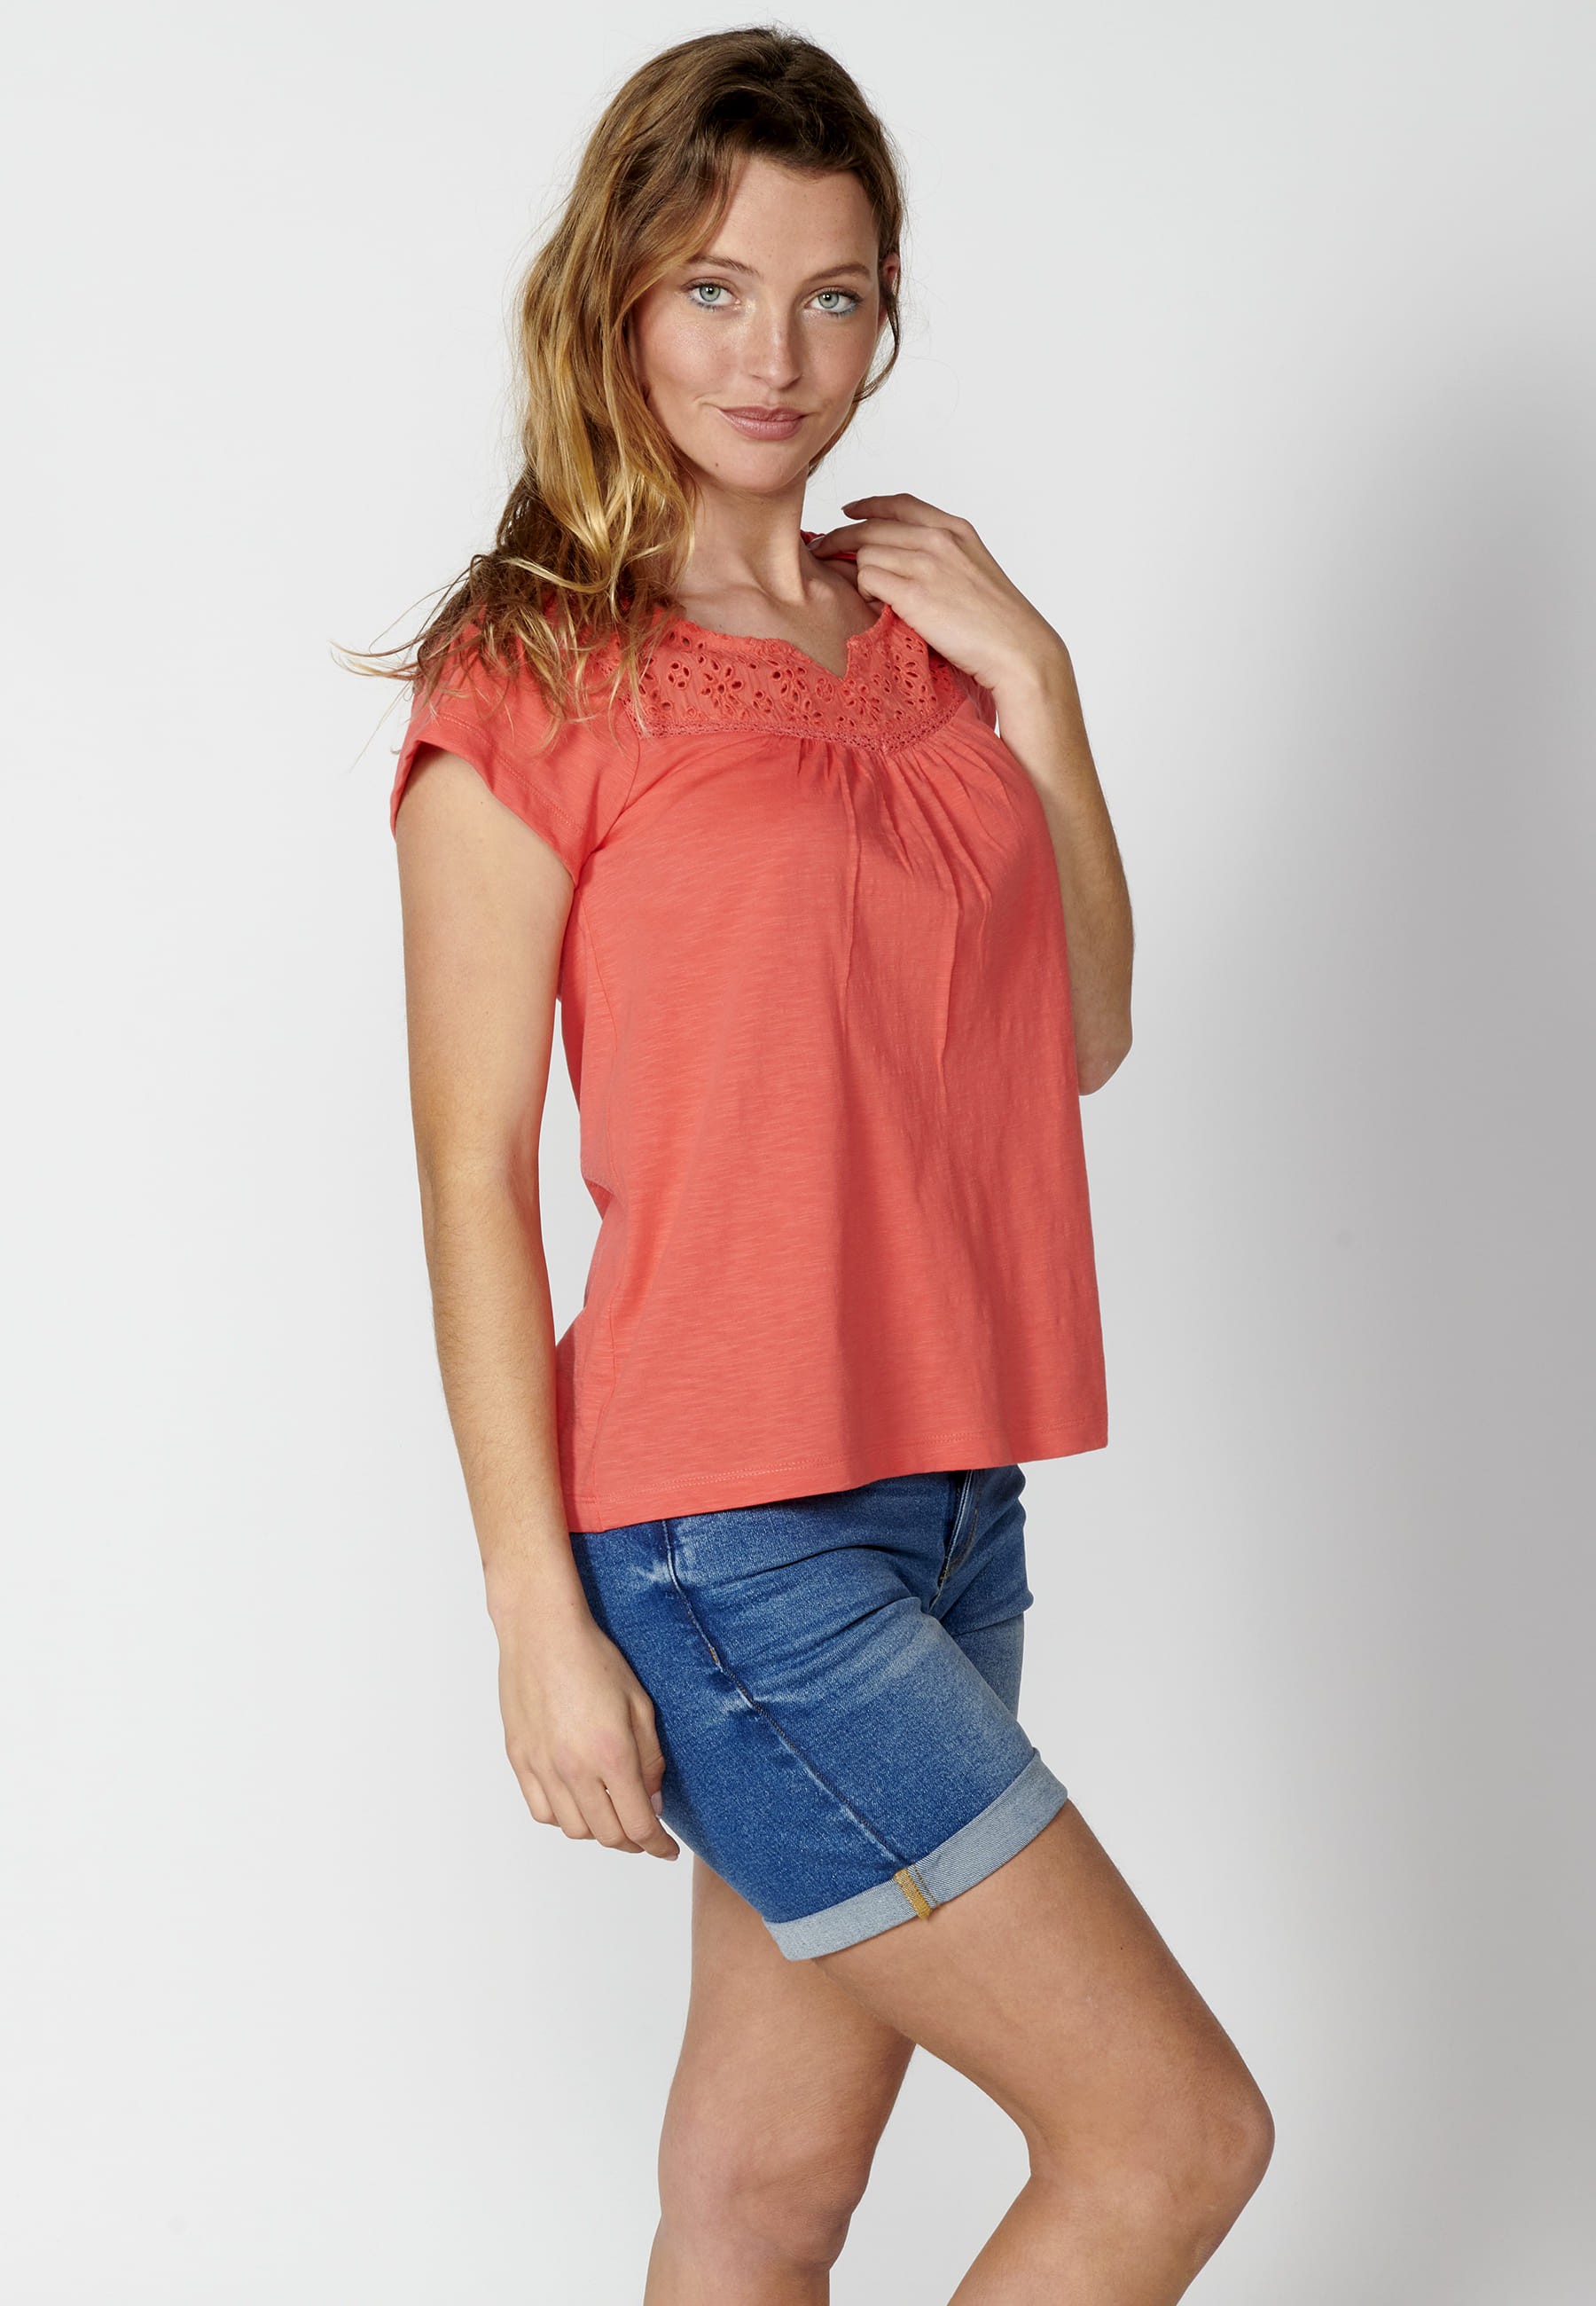 Kurzärmliges Baumwoll-T-Shirt mit herzförmigem Ausschnitt in der Farbe Koralle für Damen